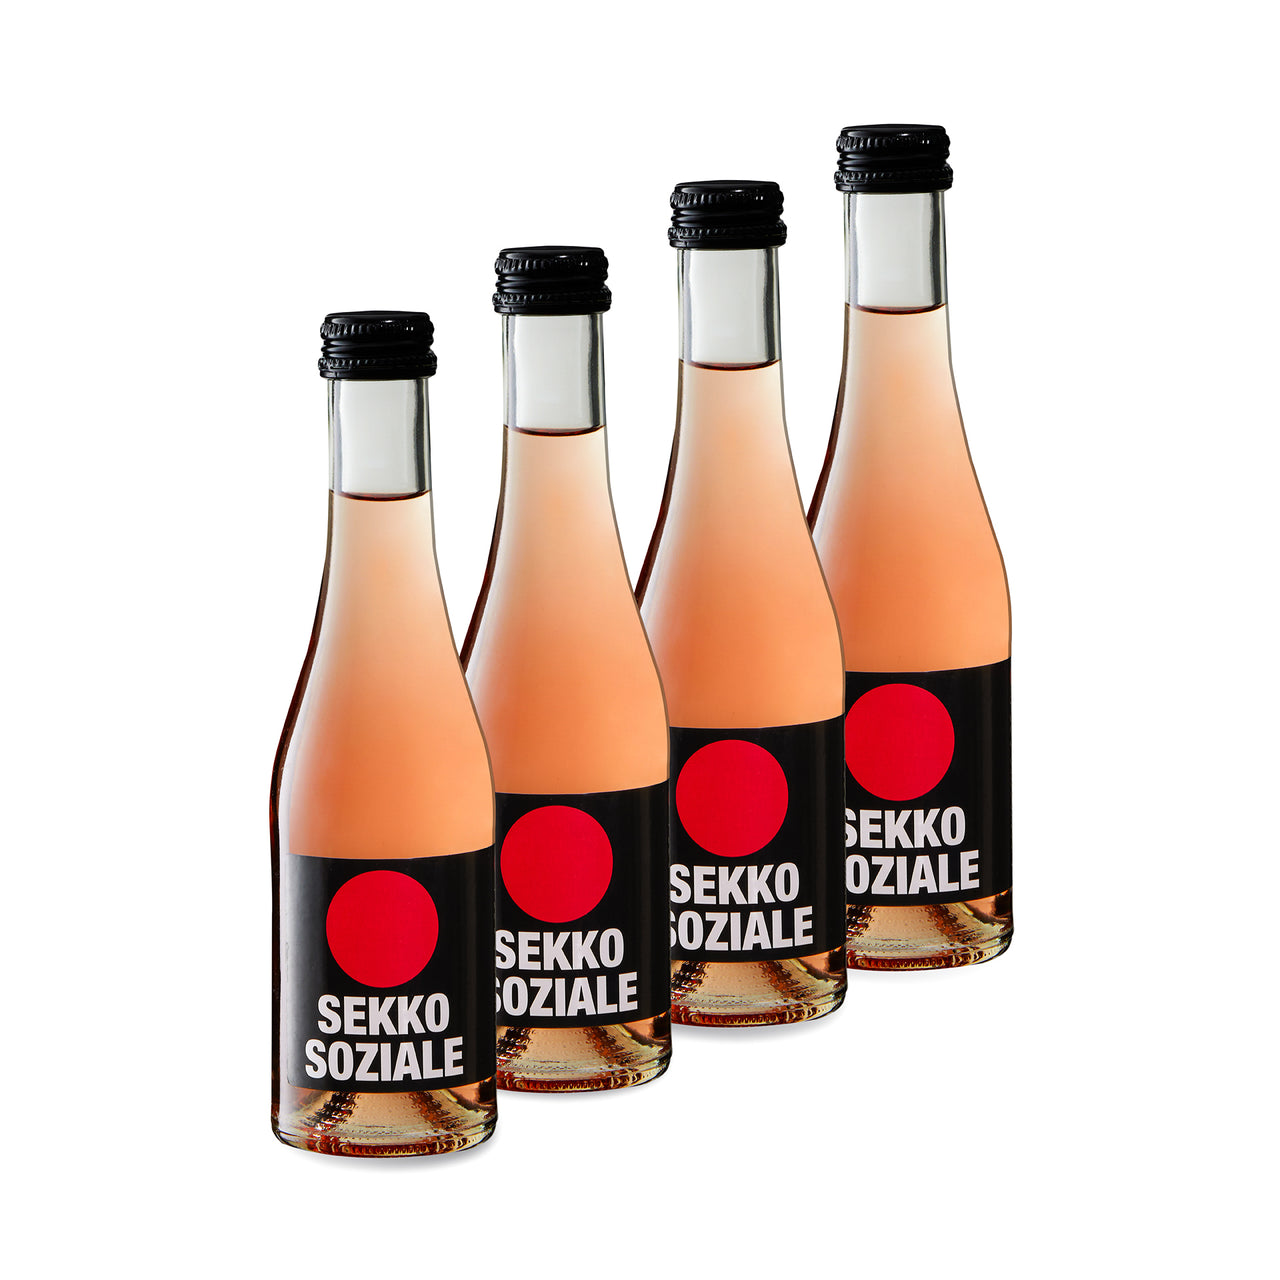 Piccolo SEKKO SOZIALE Rosé 0,2l - 4er Pack